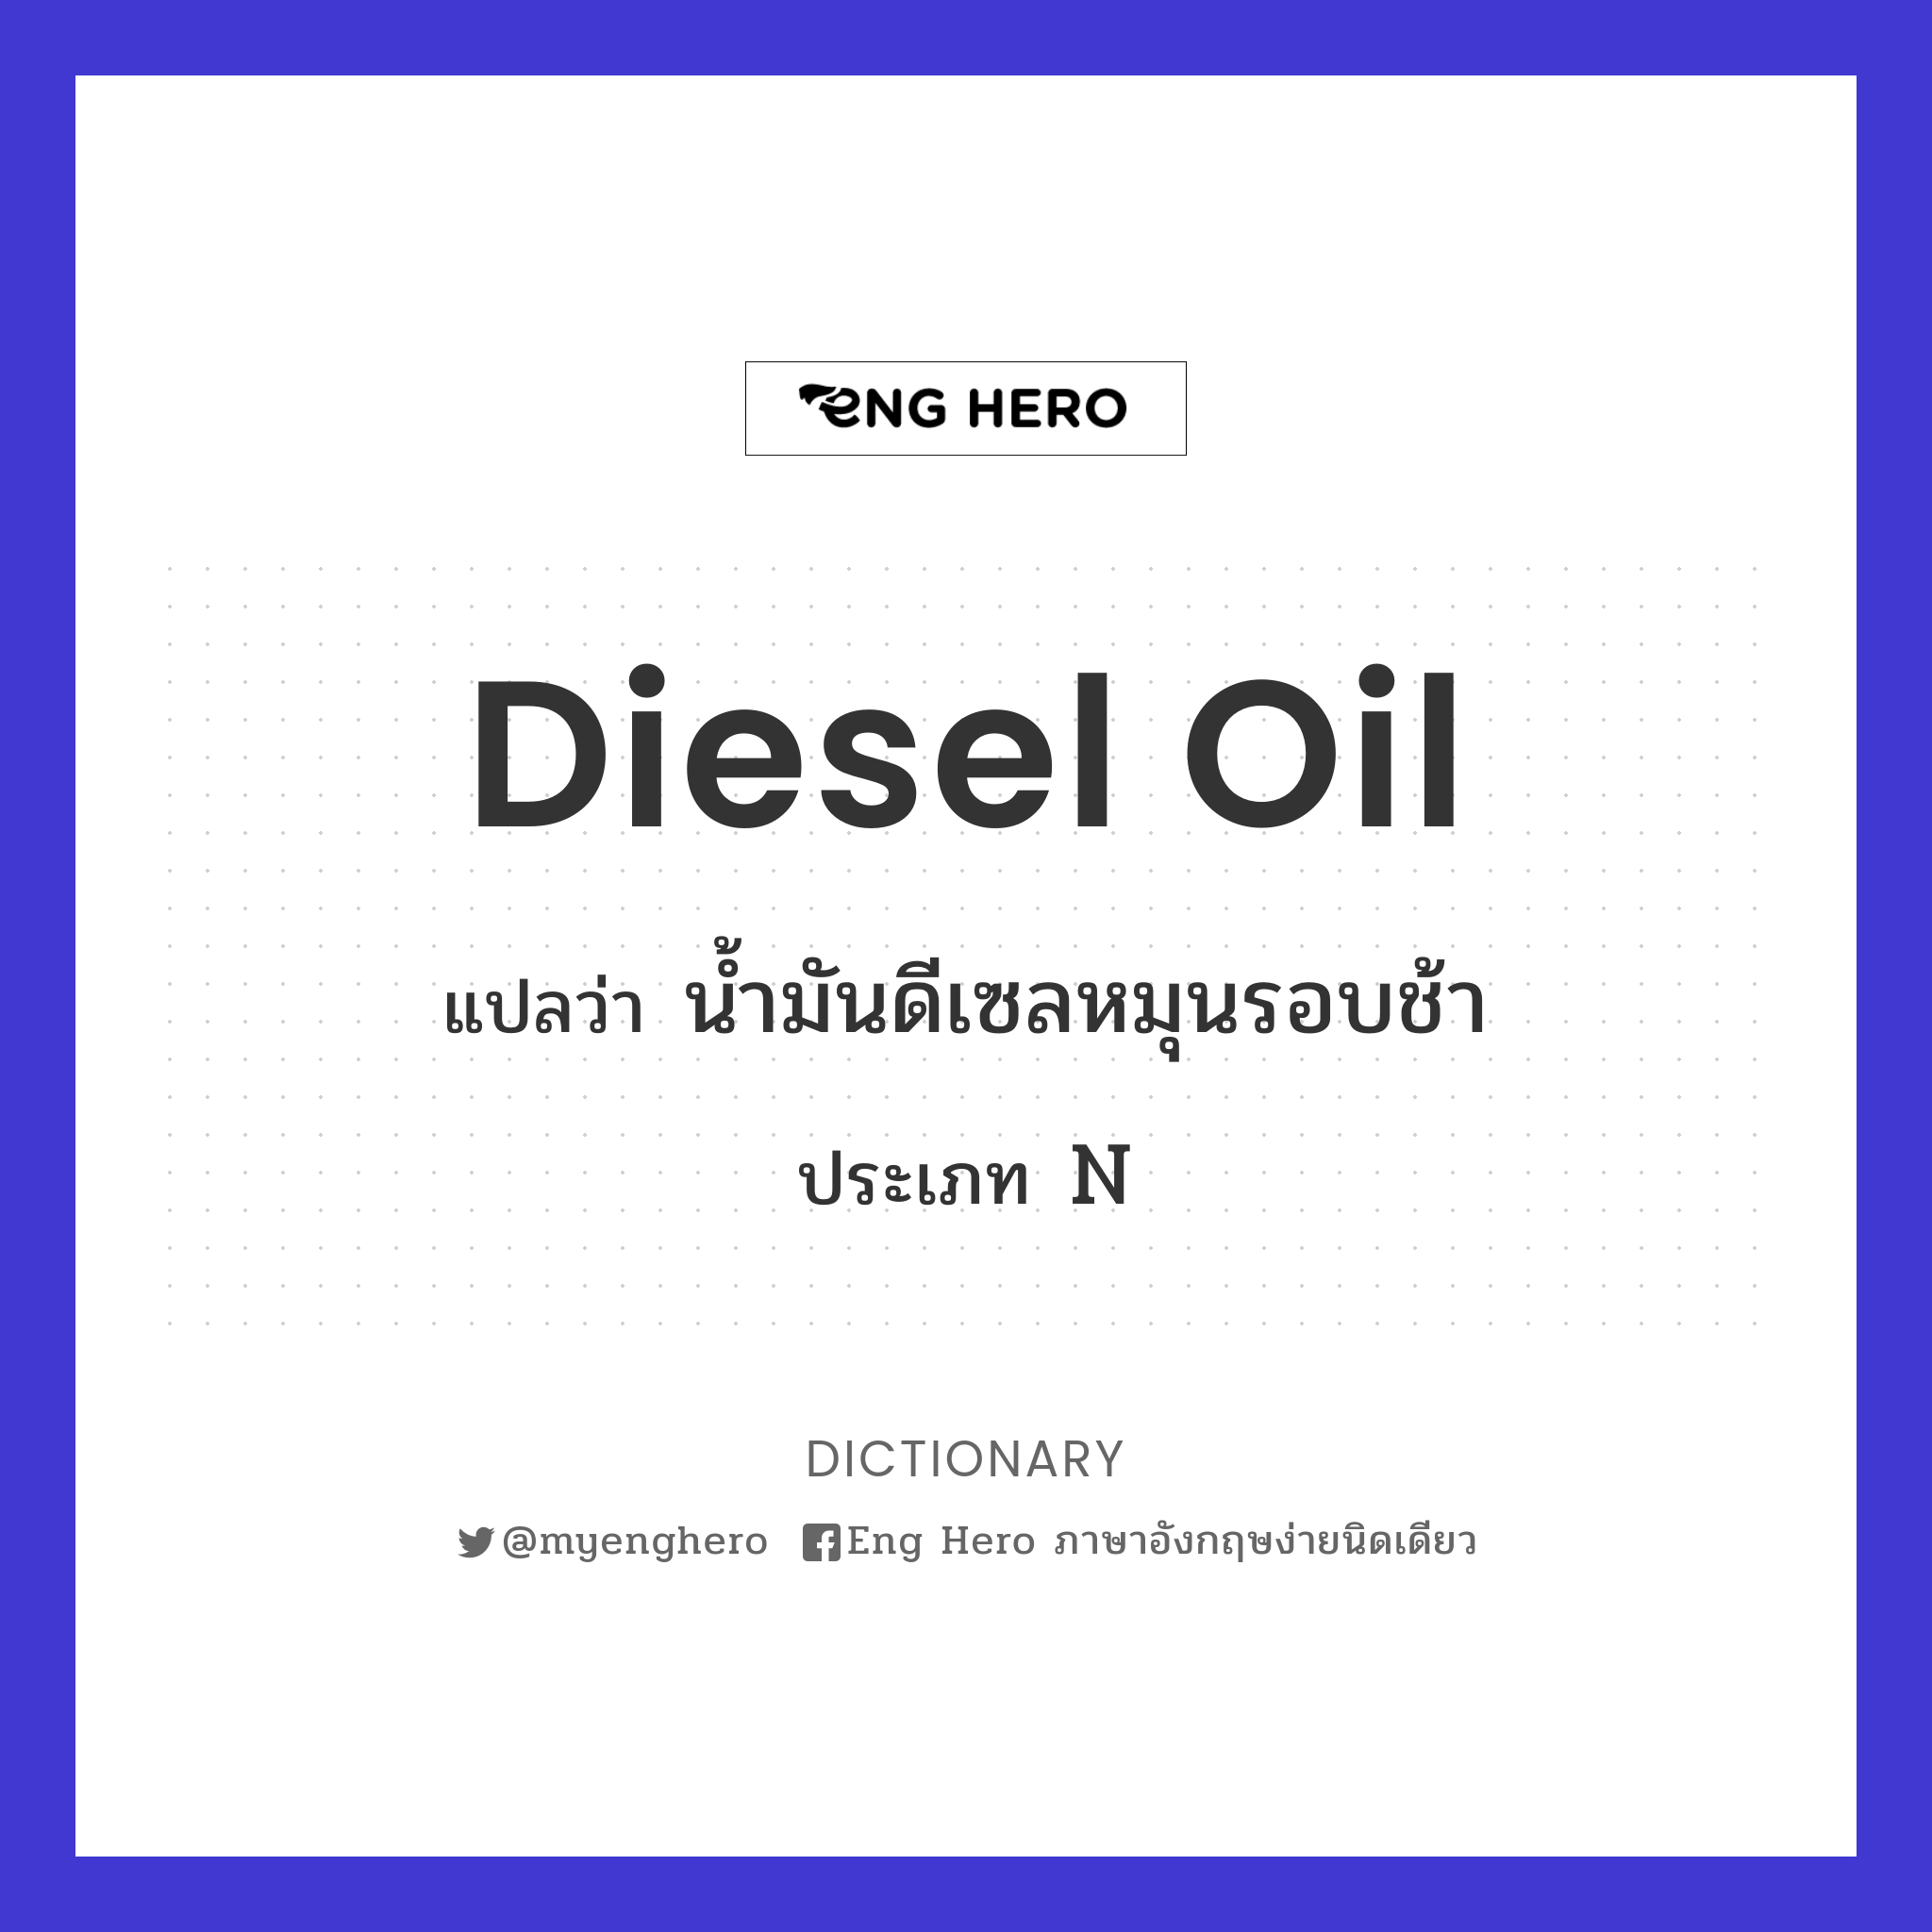 diesel oil